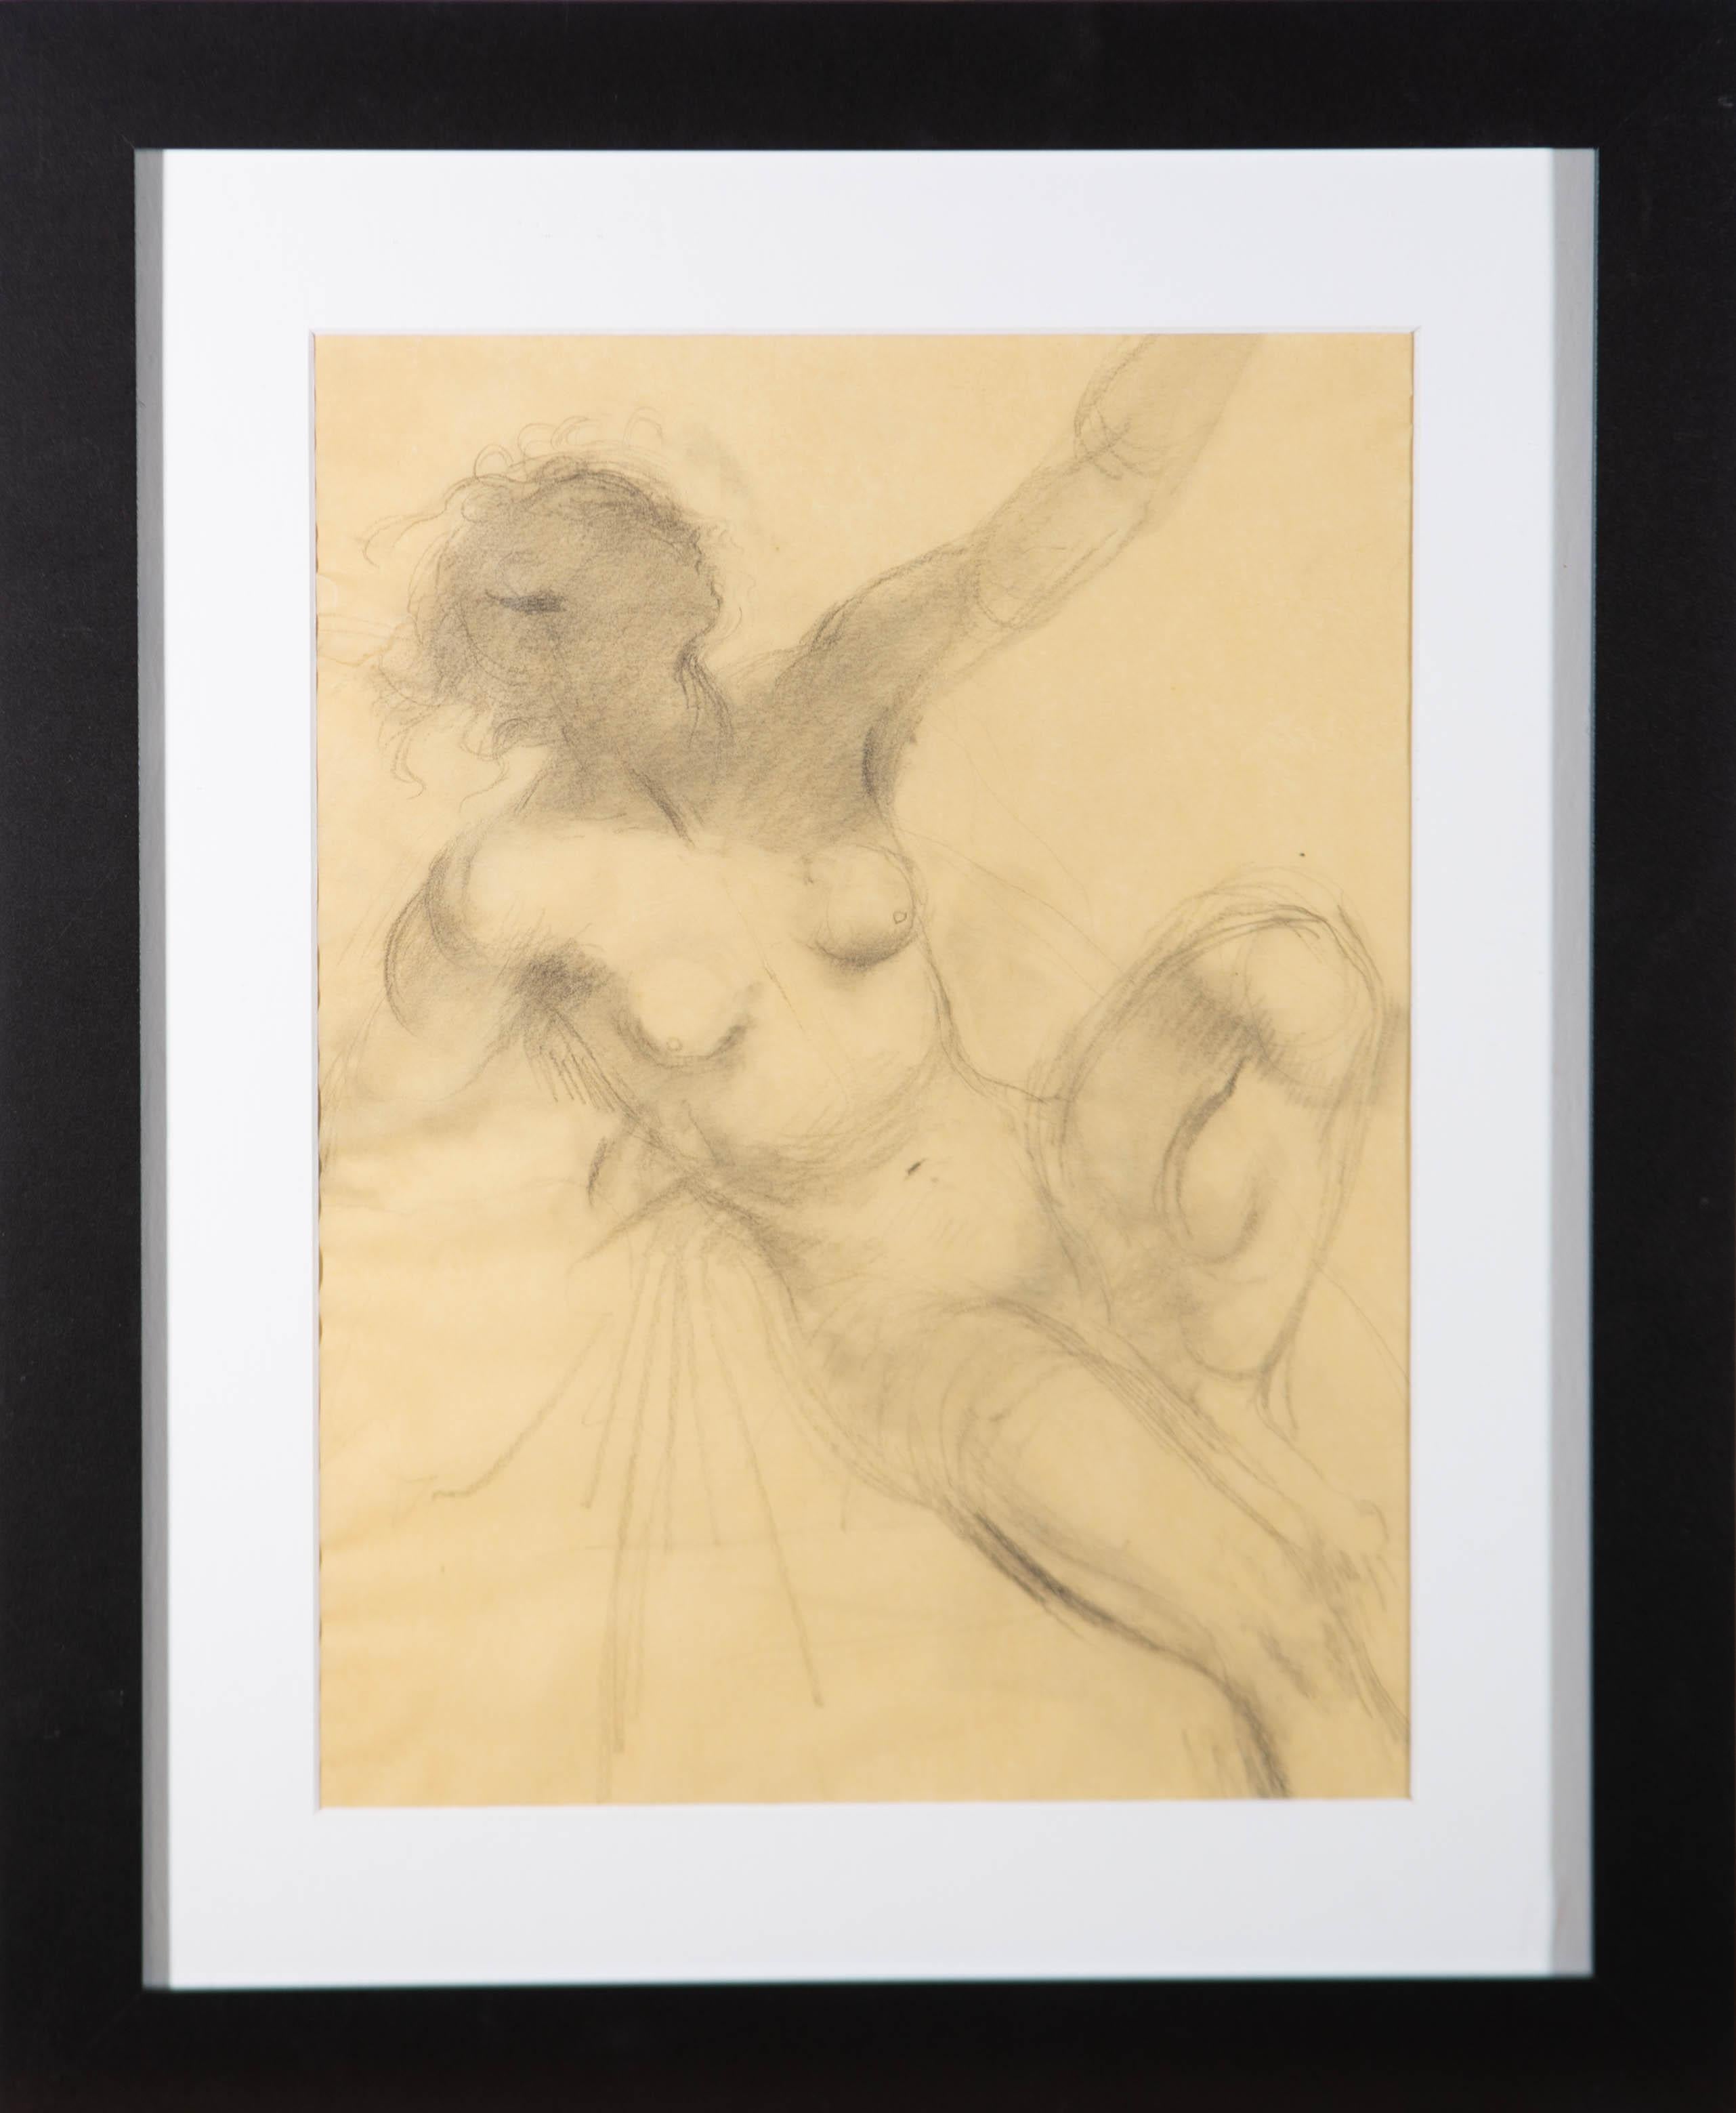 Une étude au graphite fine et élégante de l'artiste Alfred Kingsley Lawrence, représentant une figure féminine nue. La finesse des lignes et la nature expressive de la composition illustrent la maîtrise évidente du sujet et du médium par l'artiste.